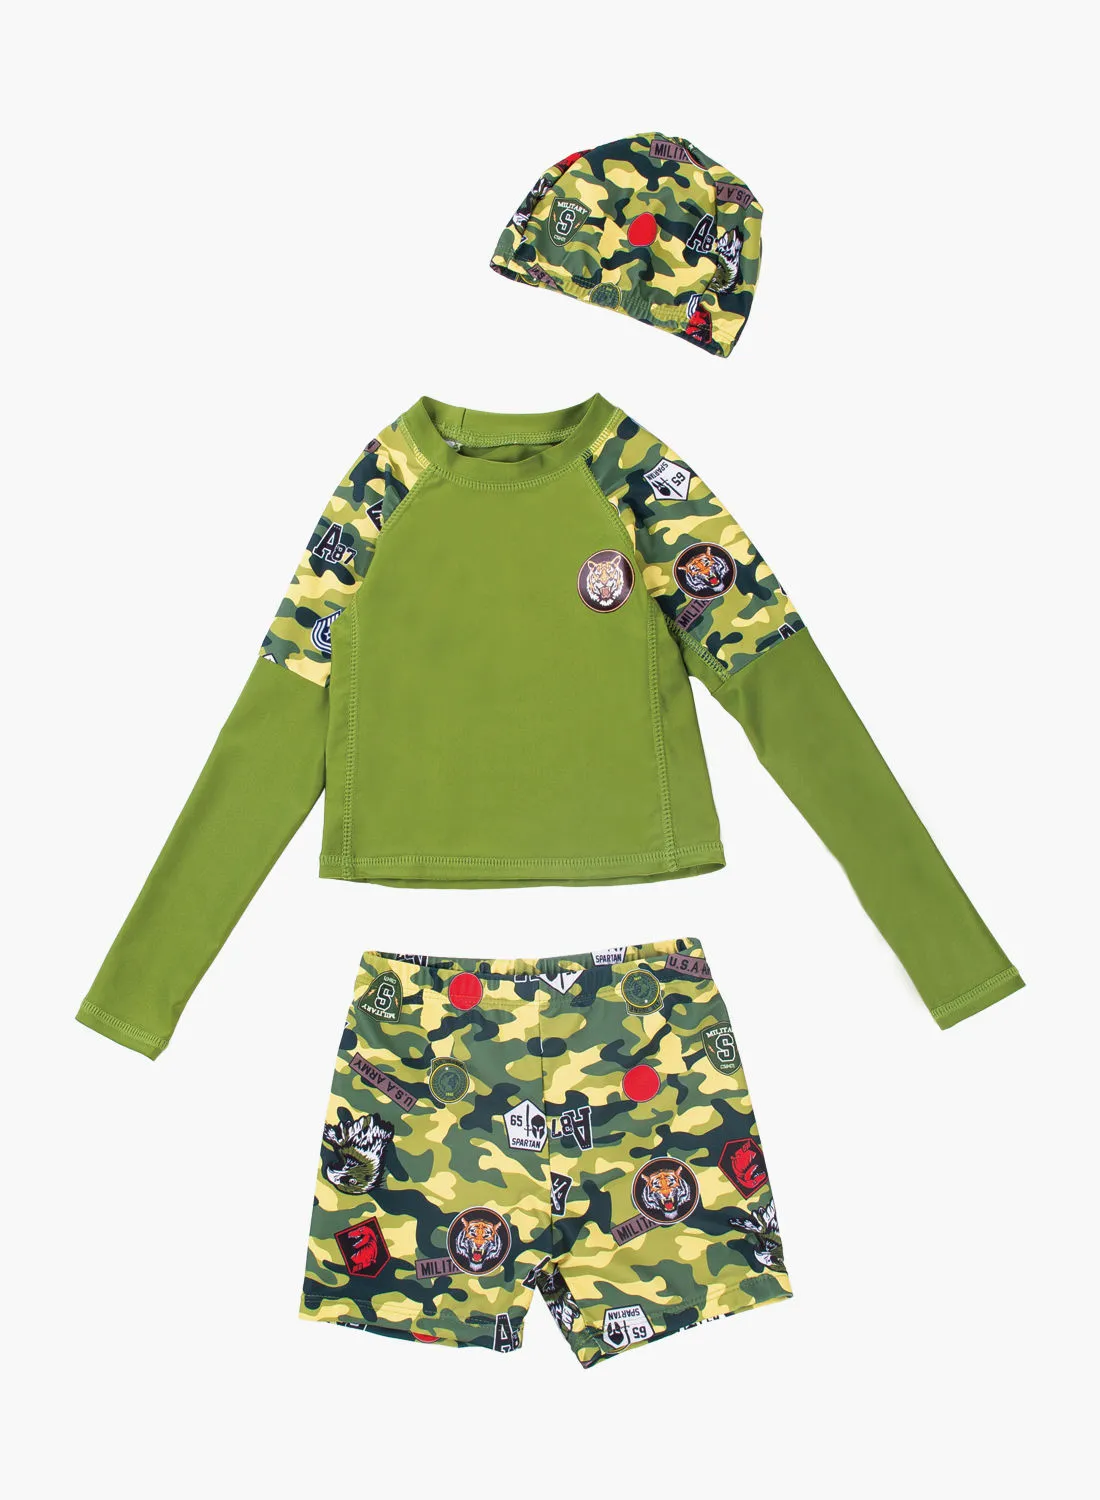 طقم ملابس سباحة للأولاد من POP MAGIC مكون من 3 قطع من الجزء العلوي والسفلي باللون الأخضر